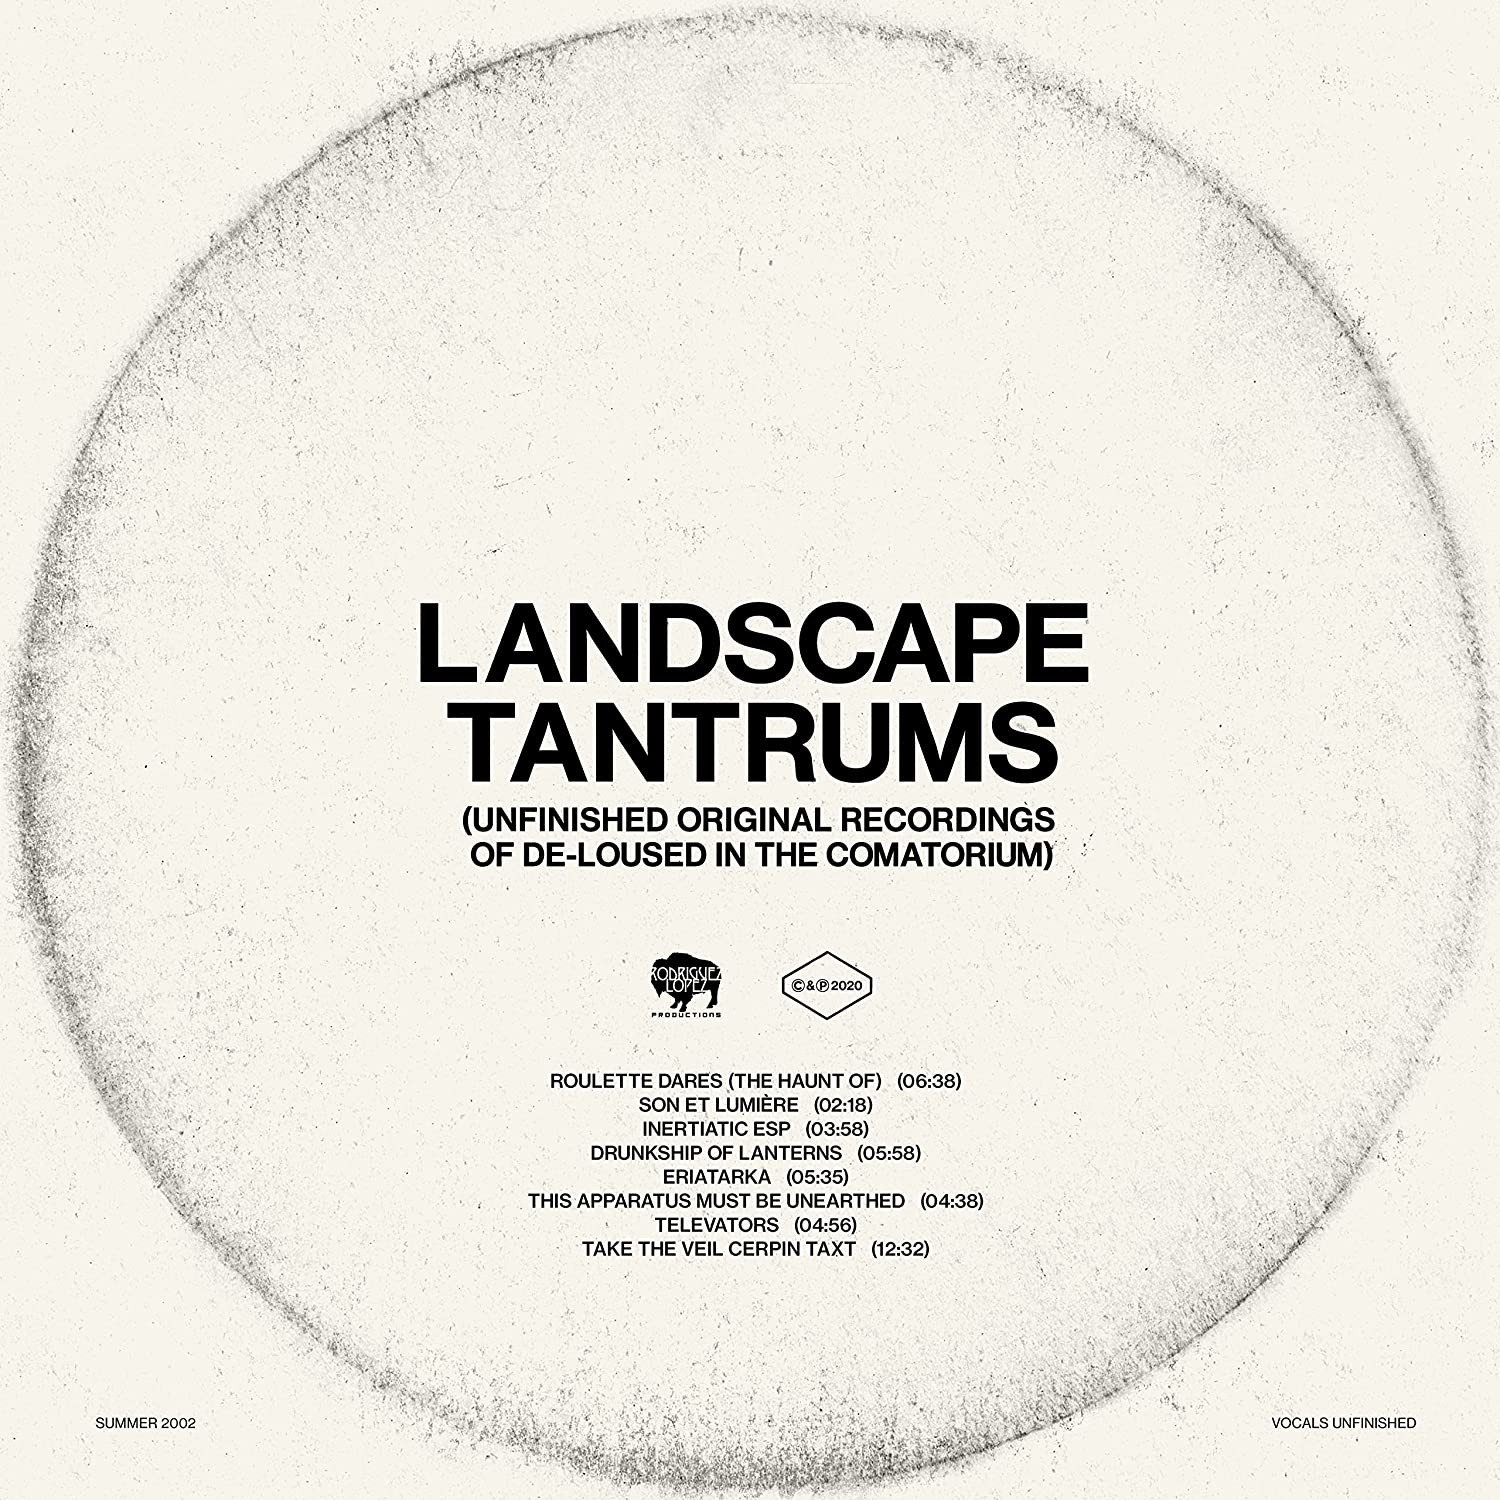 The Mars Volta - Landscape Tantrums - Unfinished Original Recordings Of De-Loused In The Comatorium (Glow in the Dark) Vinyl LP